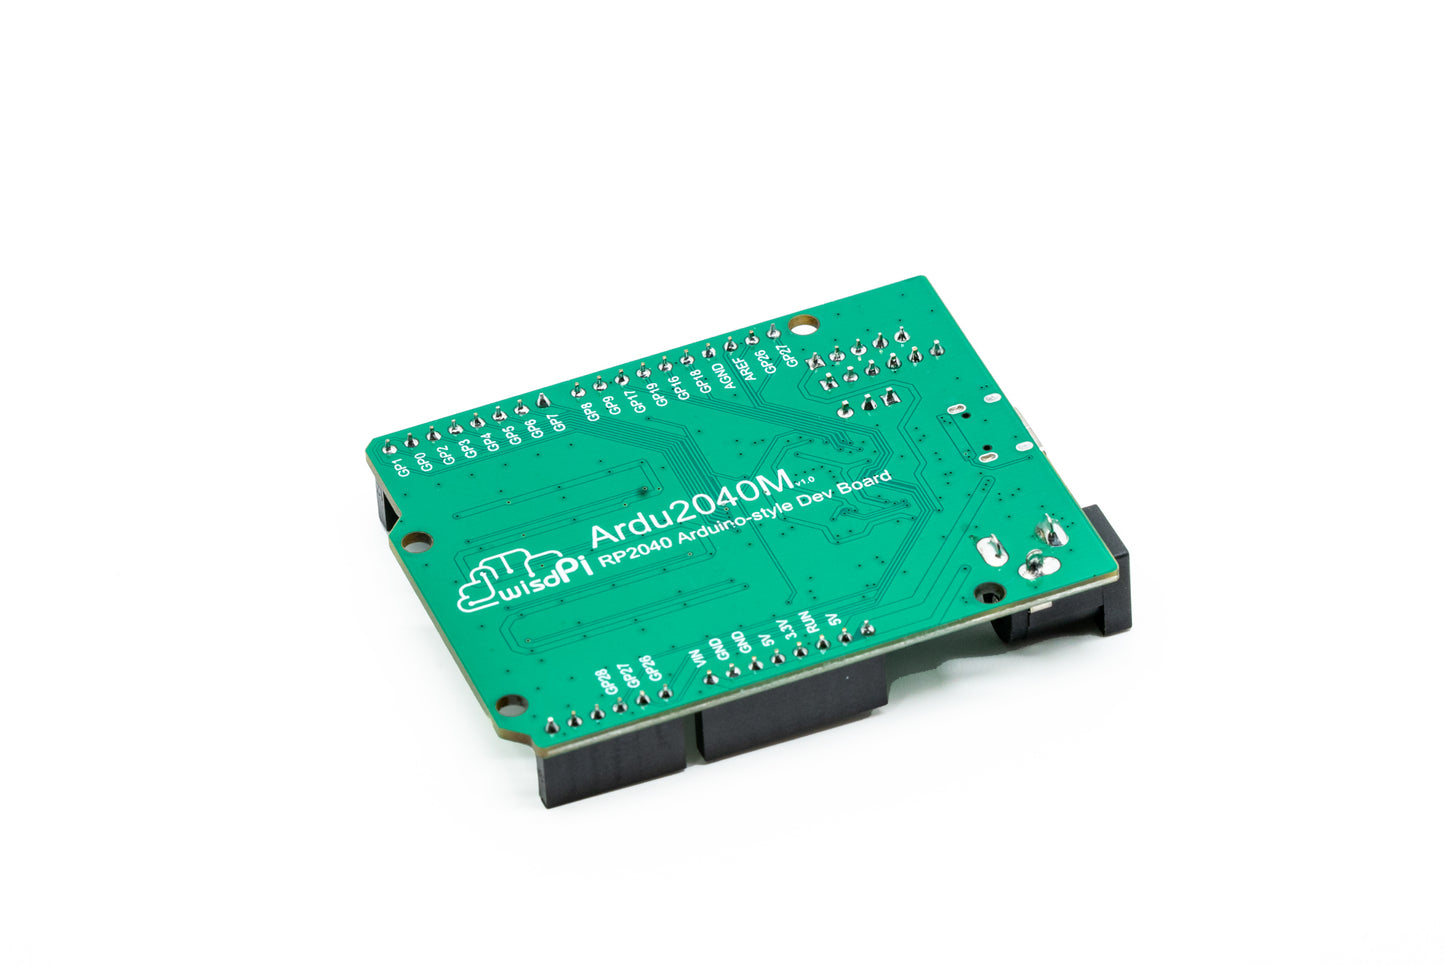 Ardu2040M | An Arduino style RP2040 RGB Matrix board